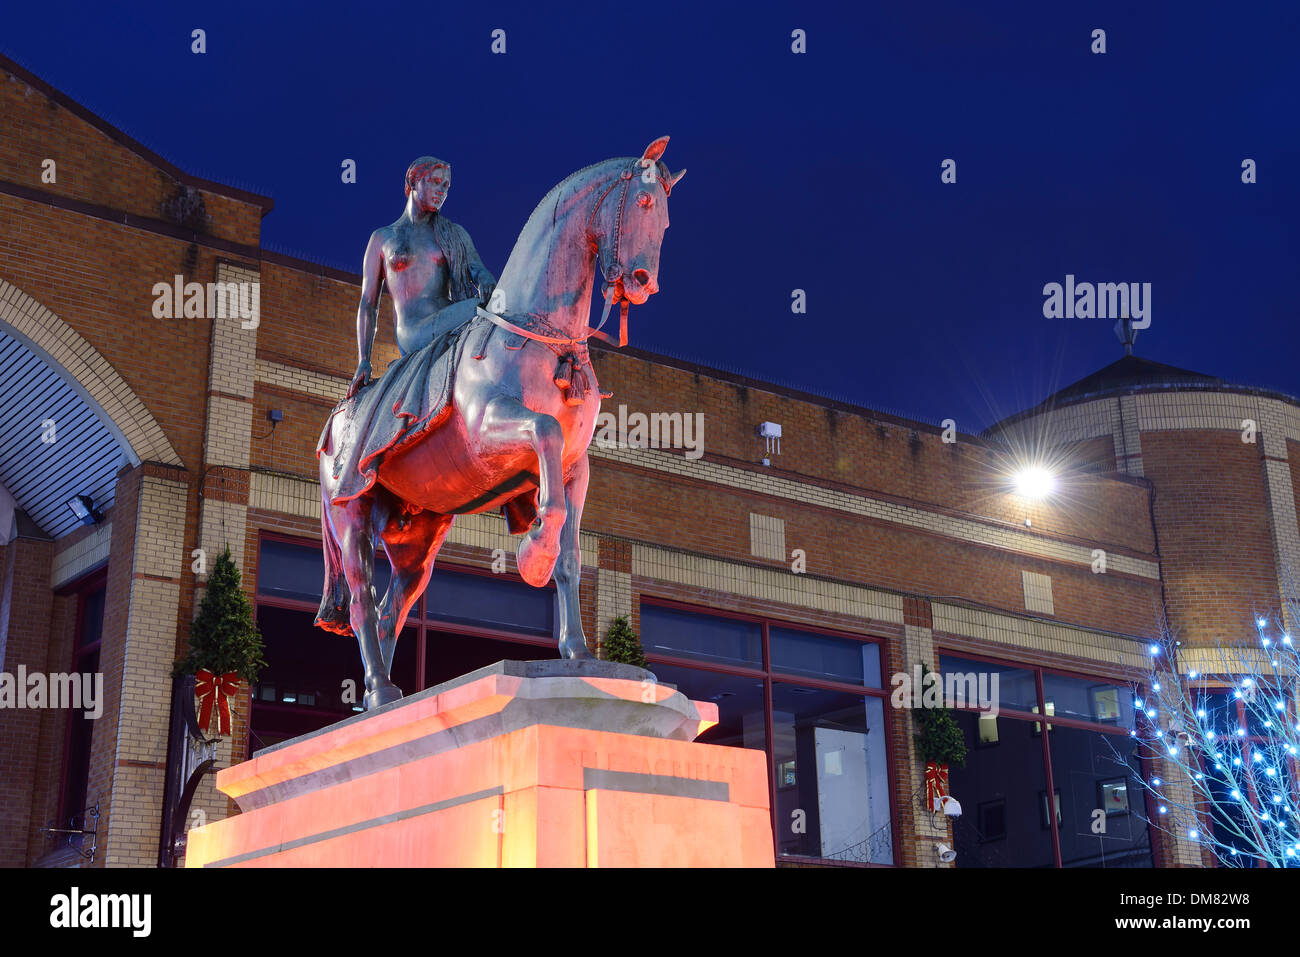 La Lady Godiva estatua en el centro de la ciudad de Coventry iluminados durante la noche Foto de stock